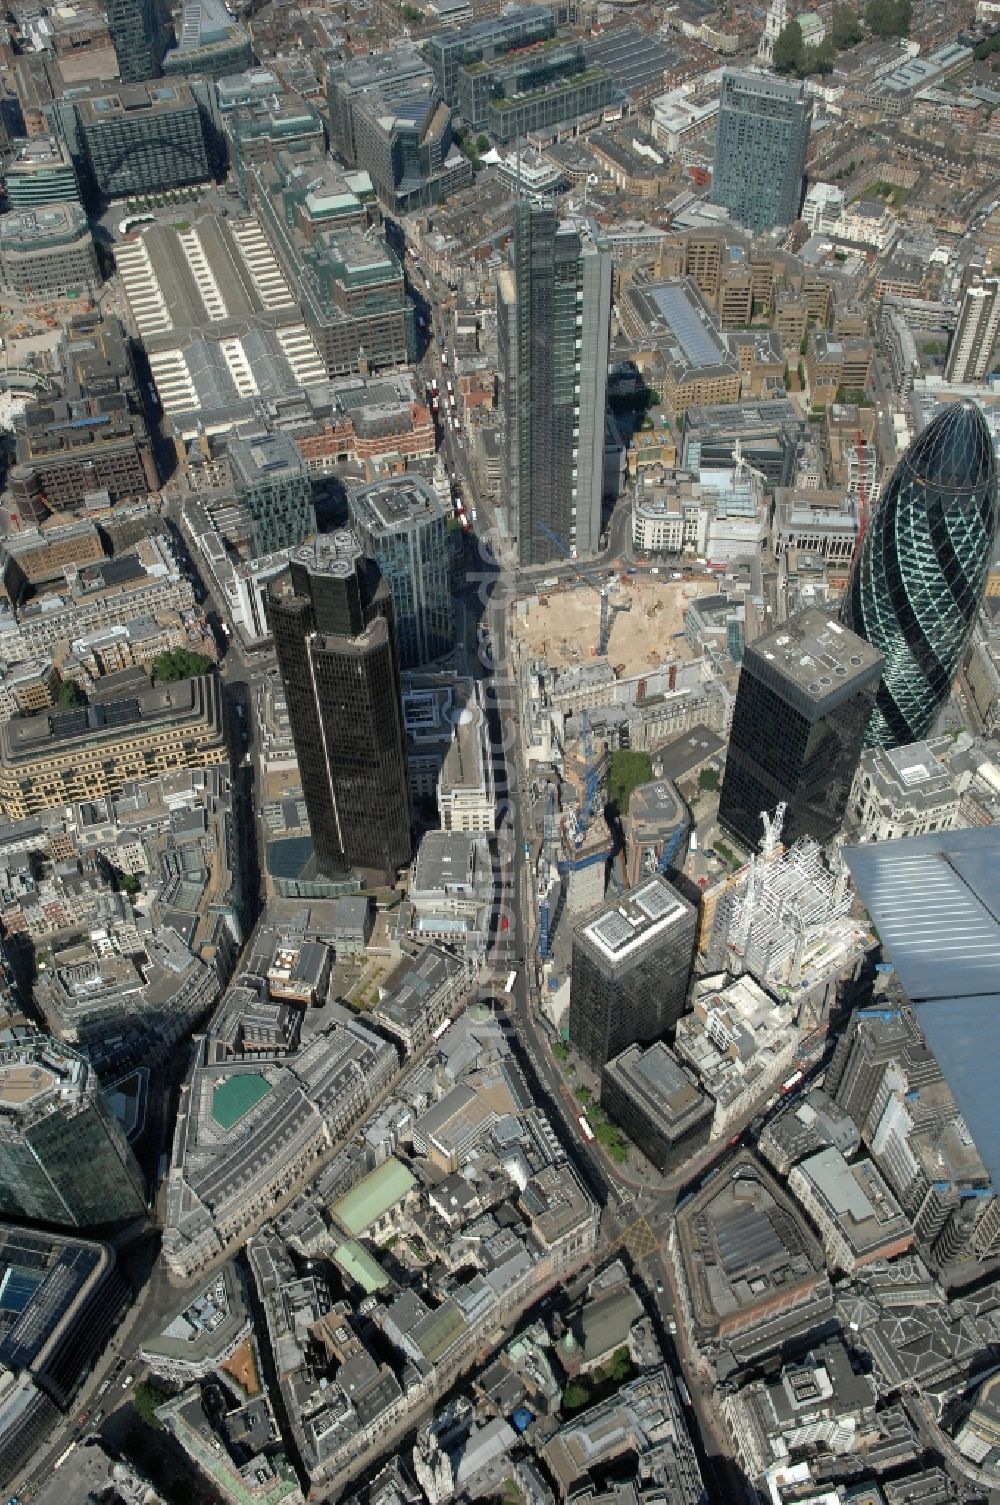 London aus der Vogelperspektive: Blick auf den Finanzbezirk der City of London in London